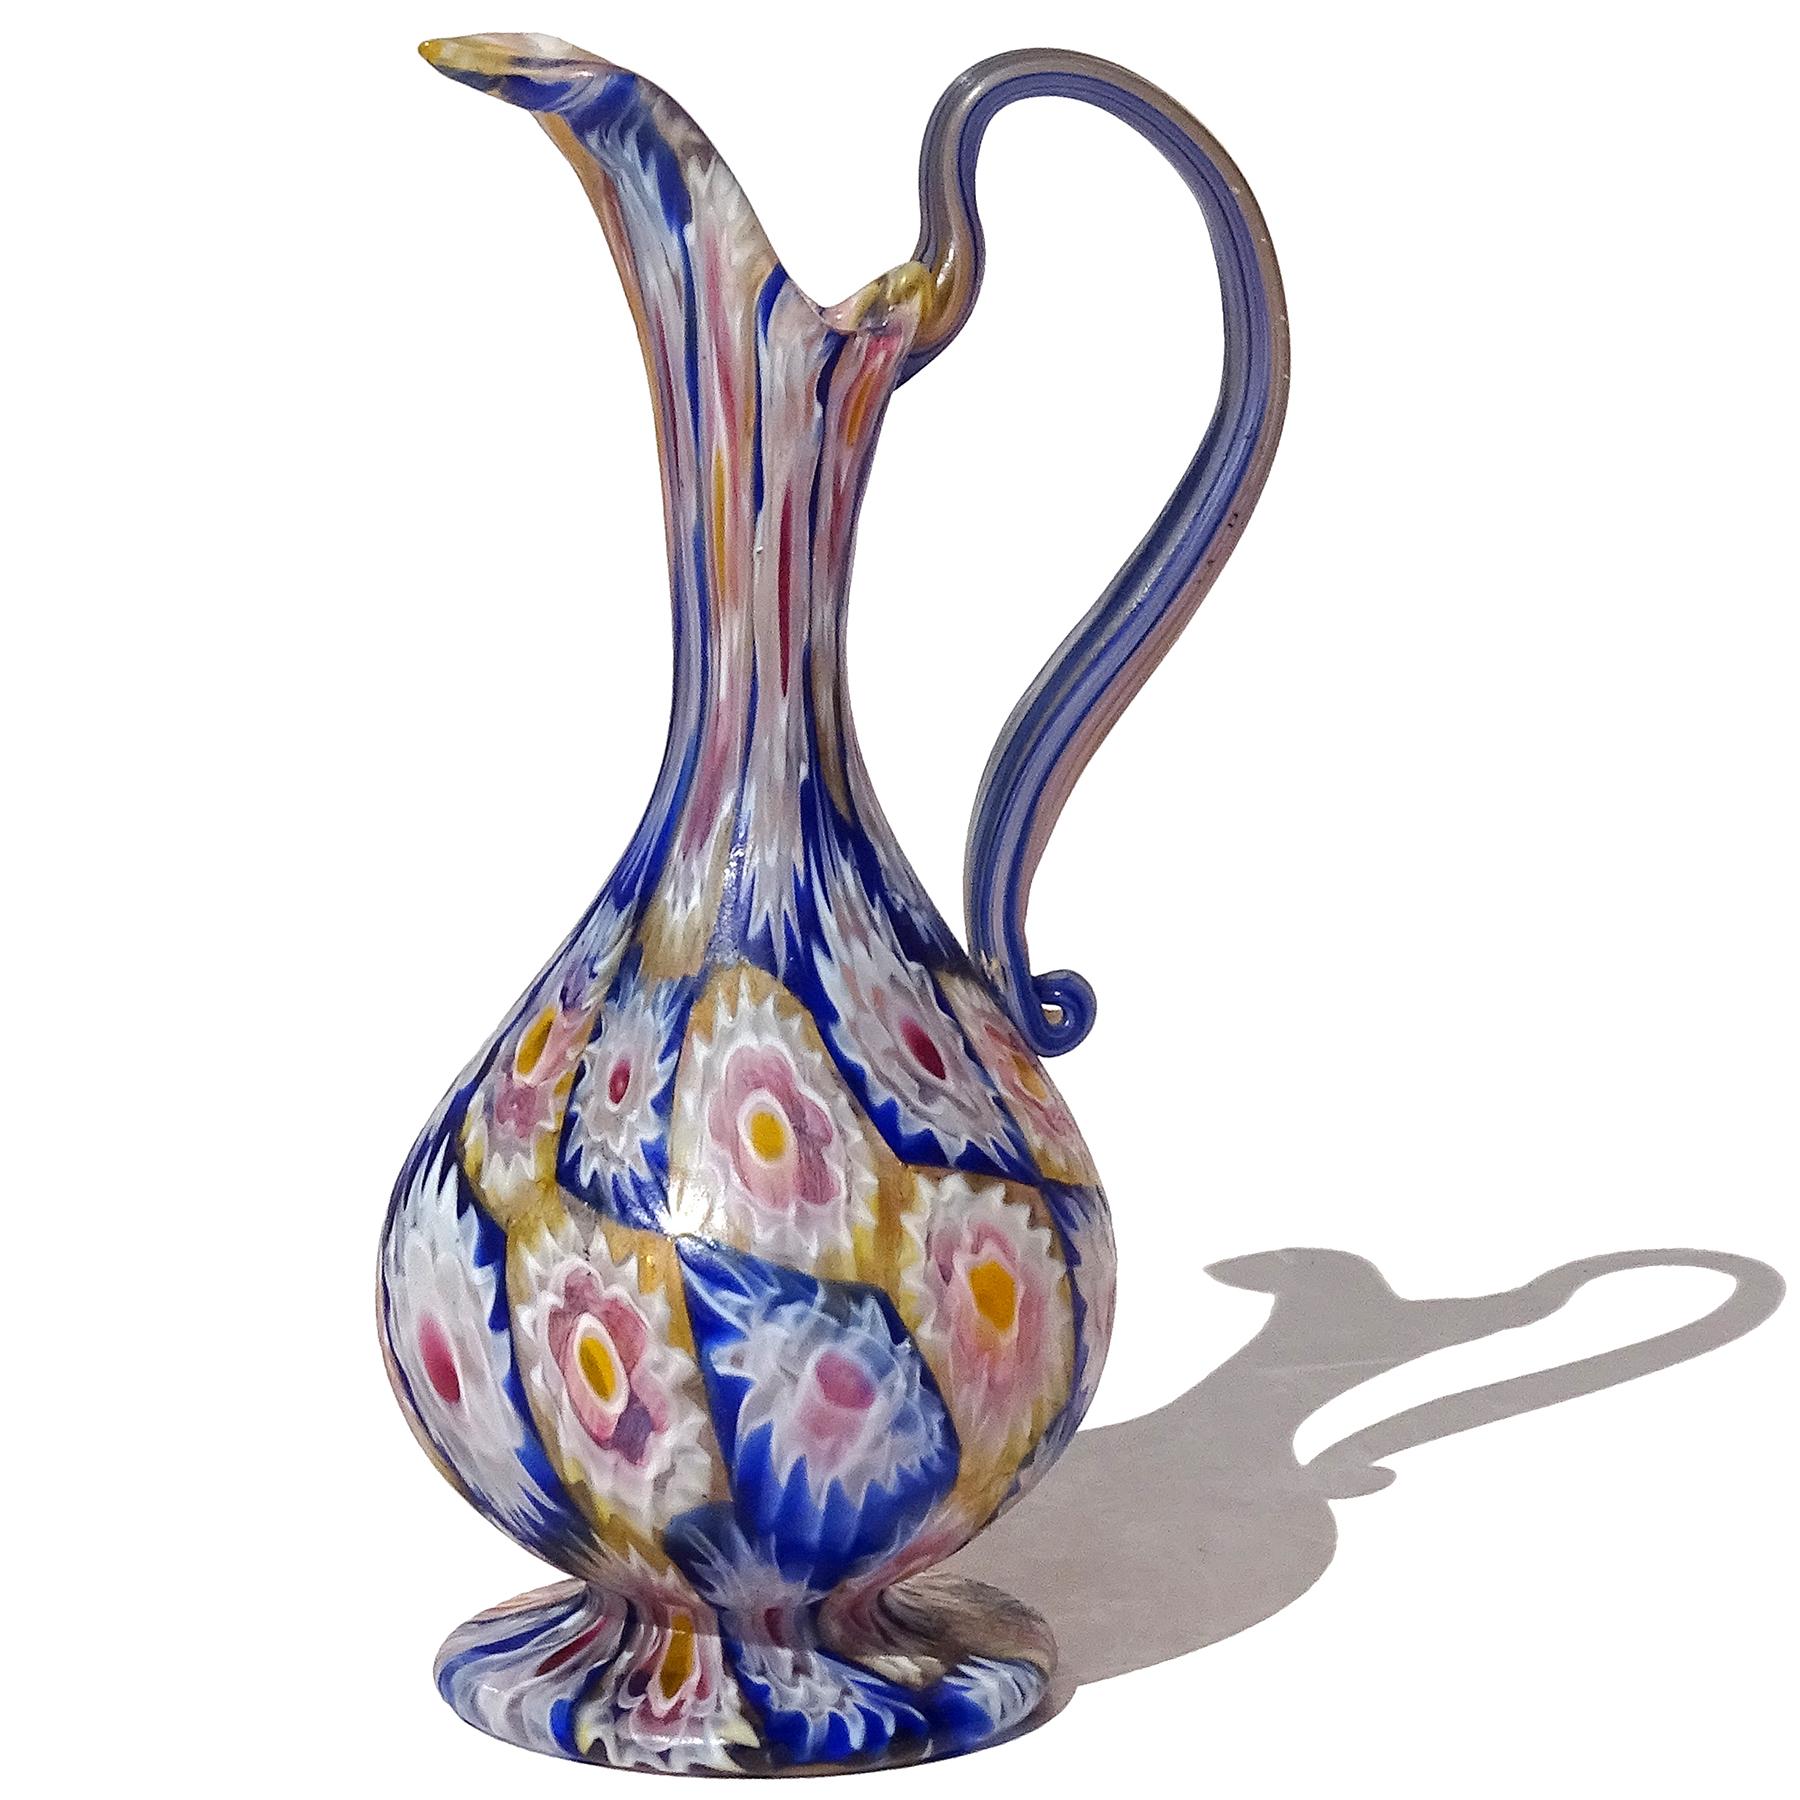 Magnifique vase / pichet antique en verre soufflé à la main de Murano, mosaïque de fleurs Millefiori Murrina, en verre d'art décoratif italien. Documenté à la société Fratelli Toso, vers 1910-1930. La pièce présente un motif en damier, avec des